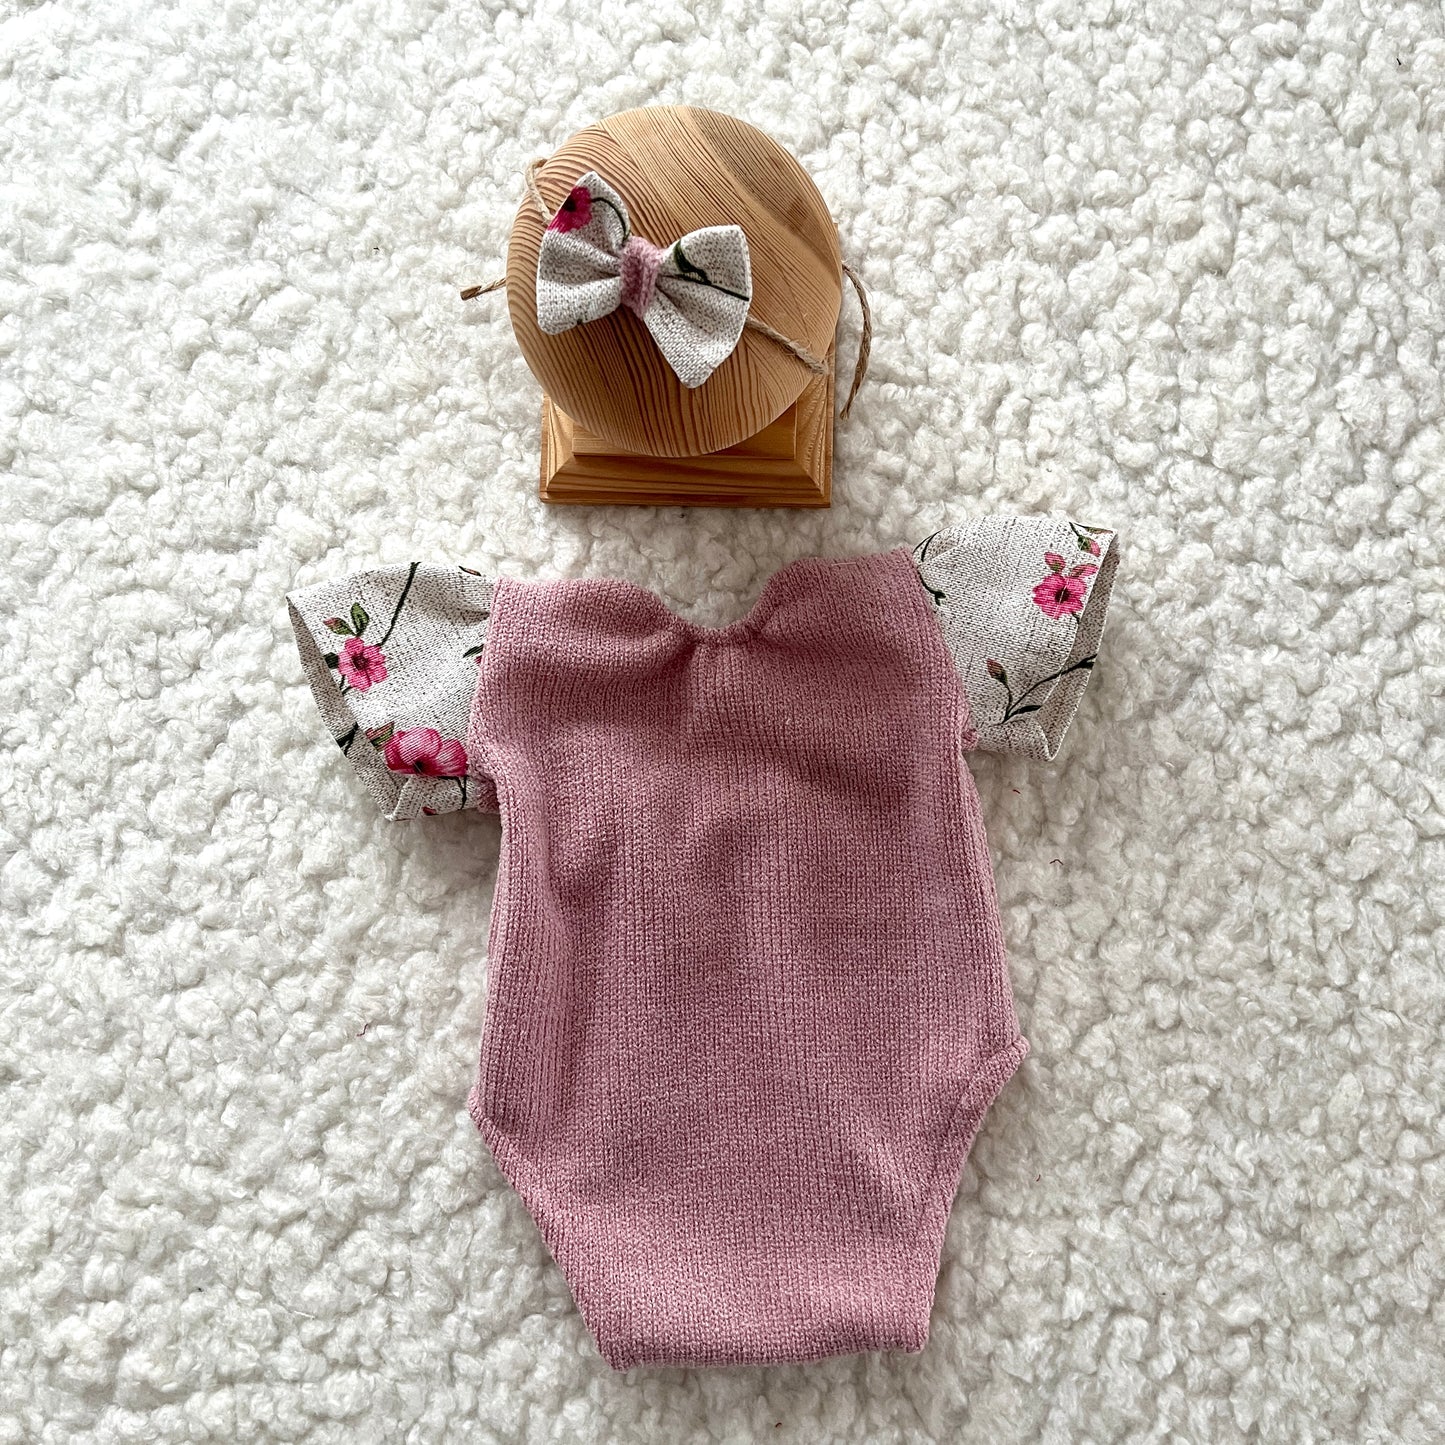 Aliana2 Neugeborenen-Fotografie-Requisiten-Outfit für Mädchen